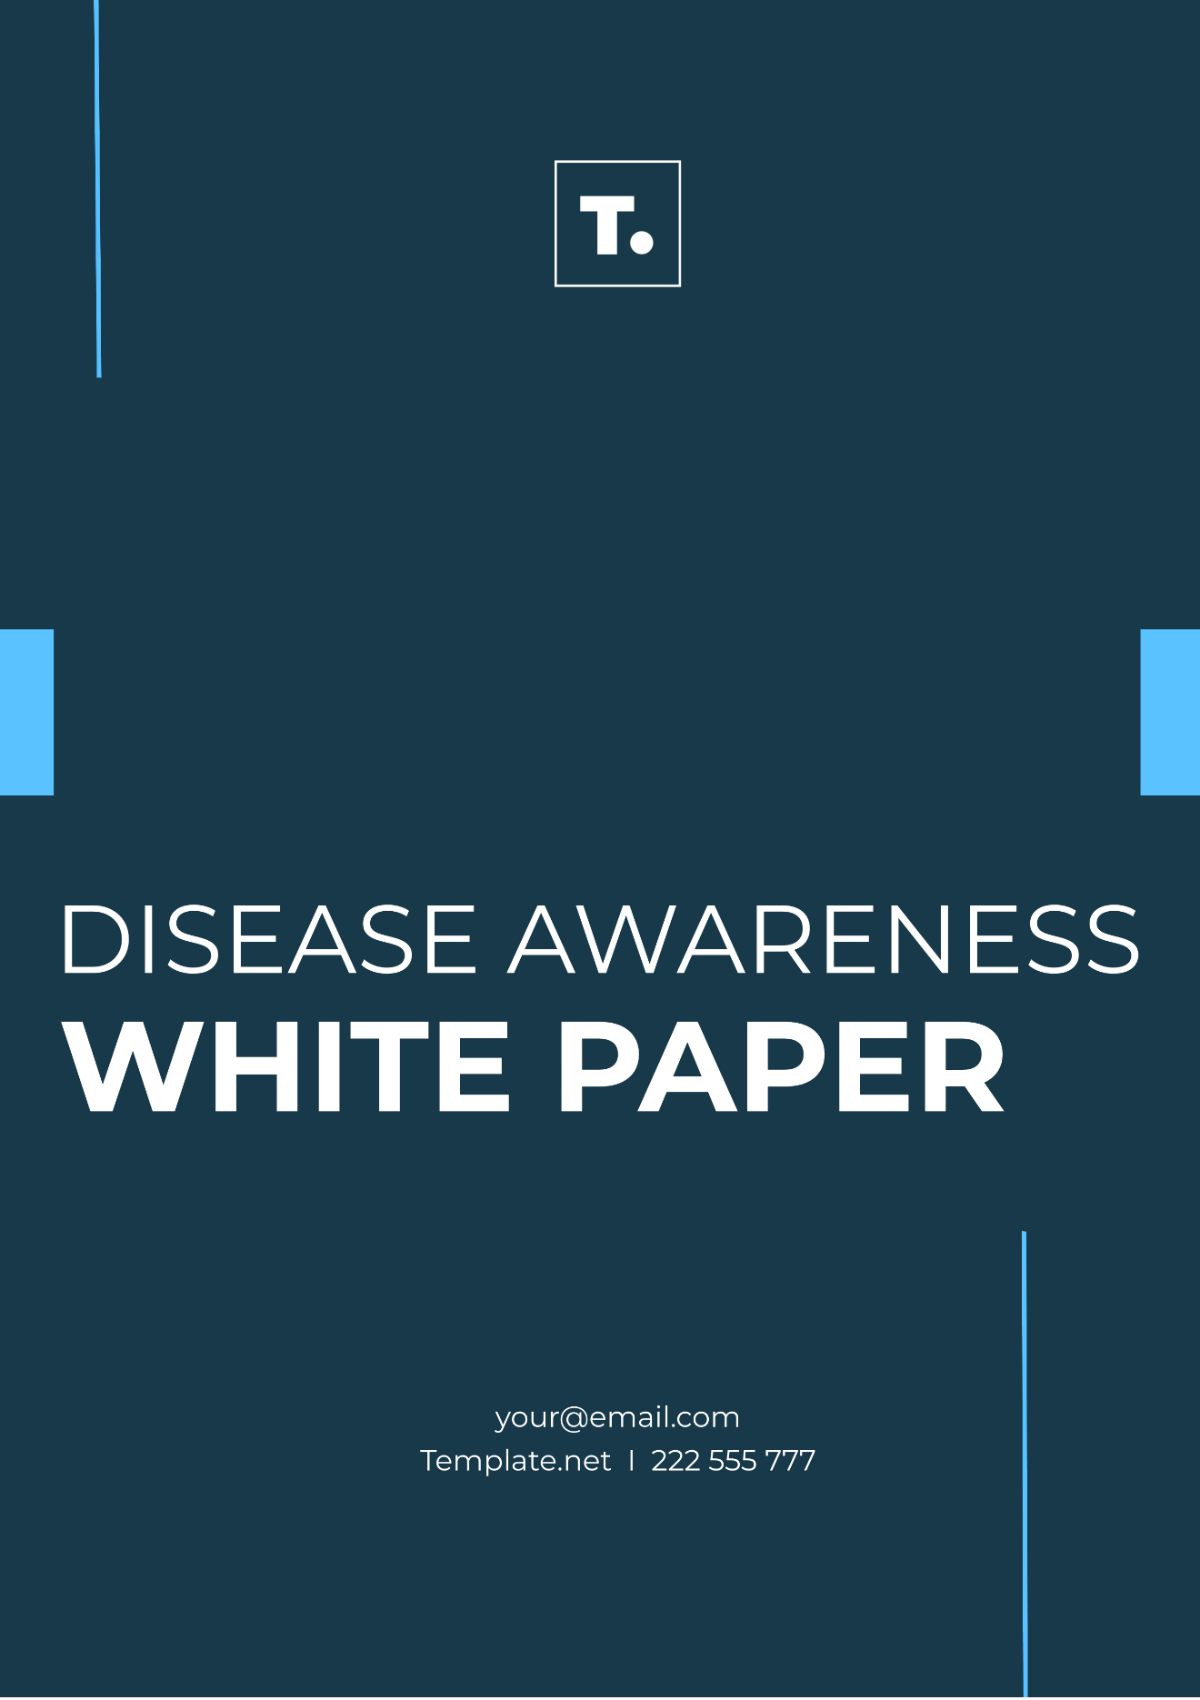 Disease Awareness White Paper Template